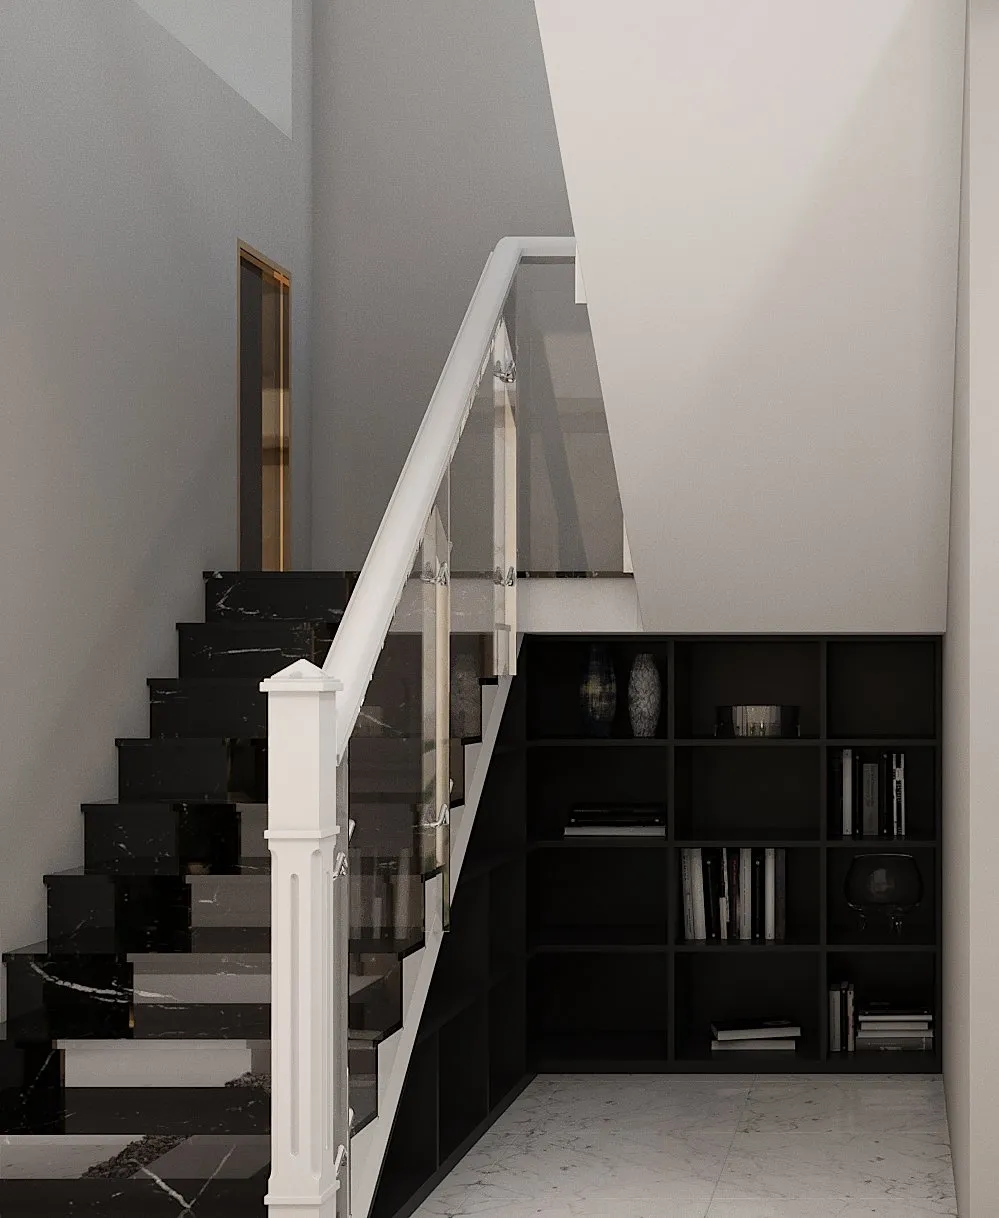 Công trình hoàn thiện nội thất cầu thang cho căn hộ theo phong cách Neo Classic. Thi công hoàn thiện bởi TD INTERIOR.